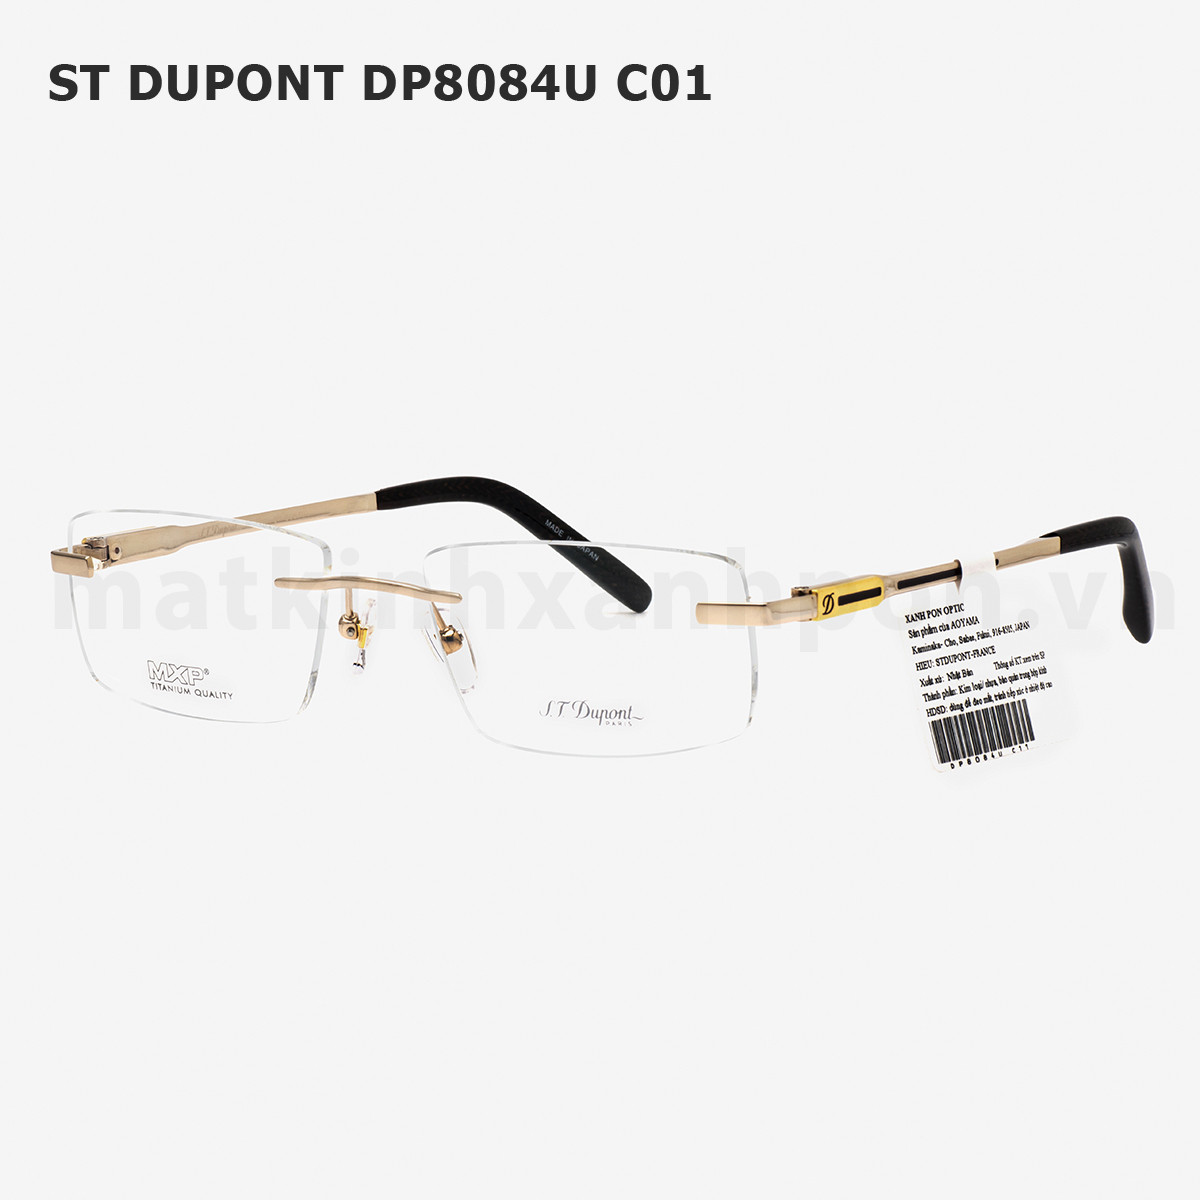 ST Dupont DP8084U C01